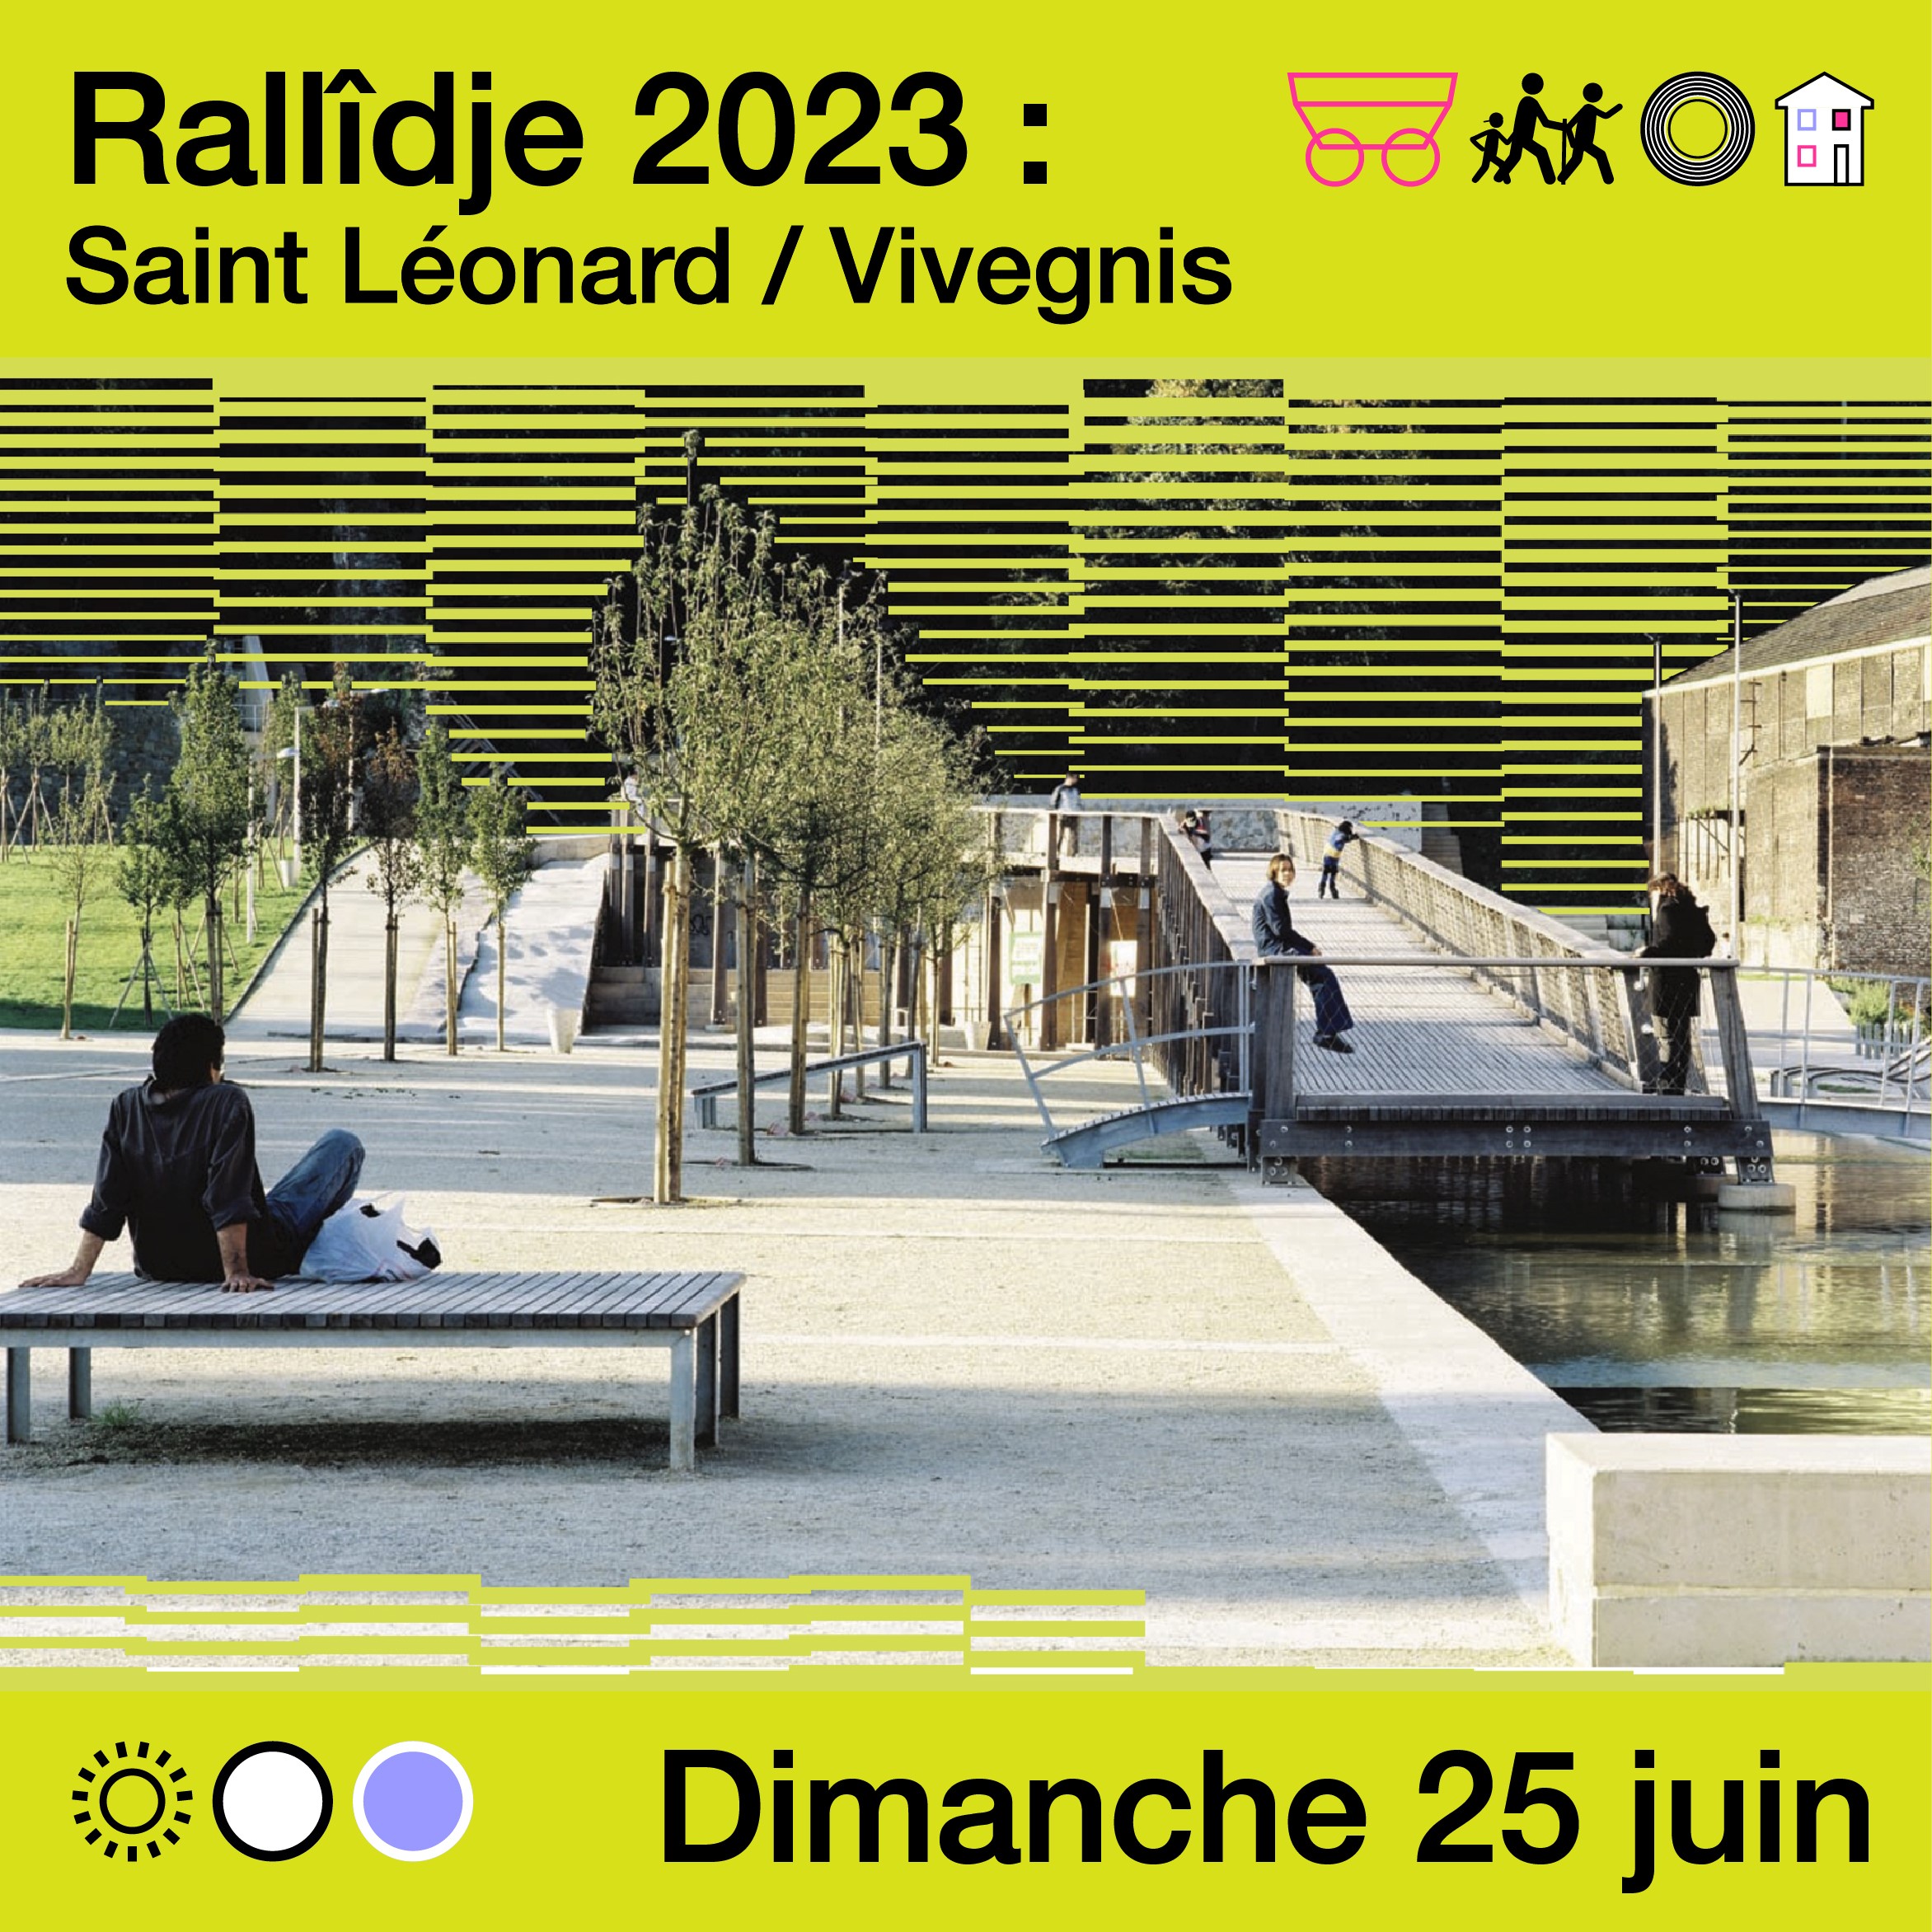 Rallîdje 2023 : Saint Léonard / Vivegnis